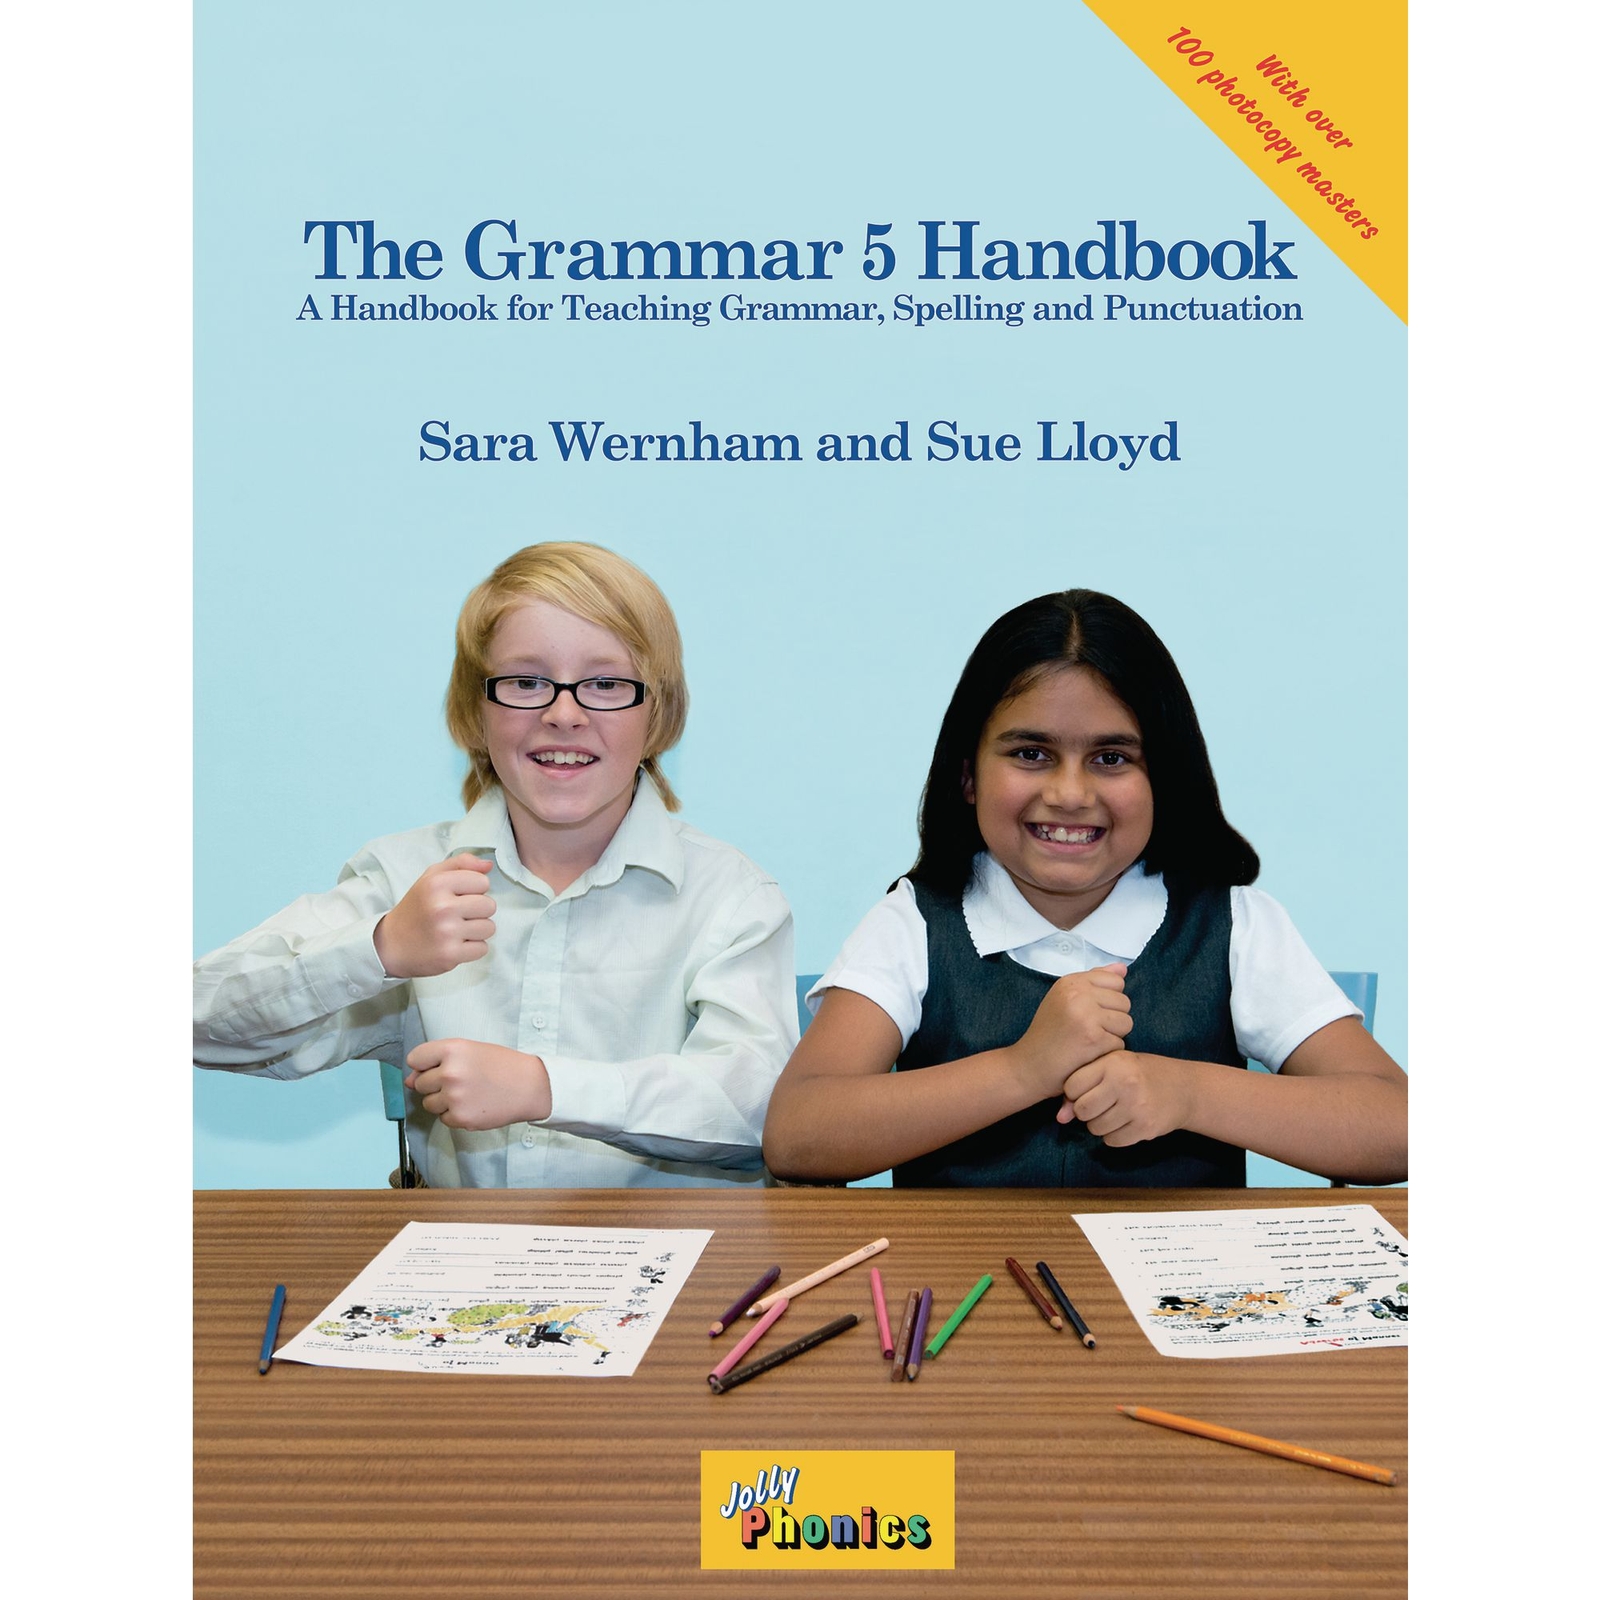 Jolly Phonics The Grammar 5 Handbook - KS2